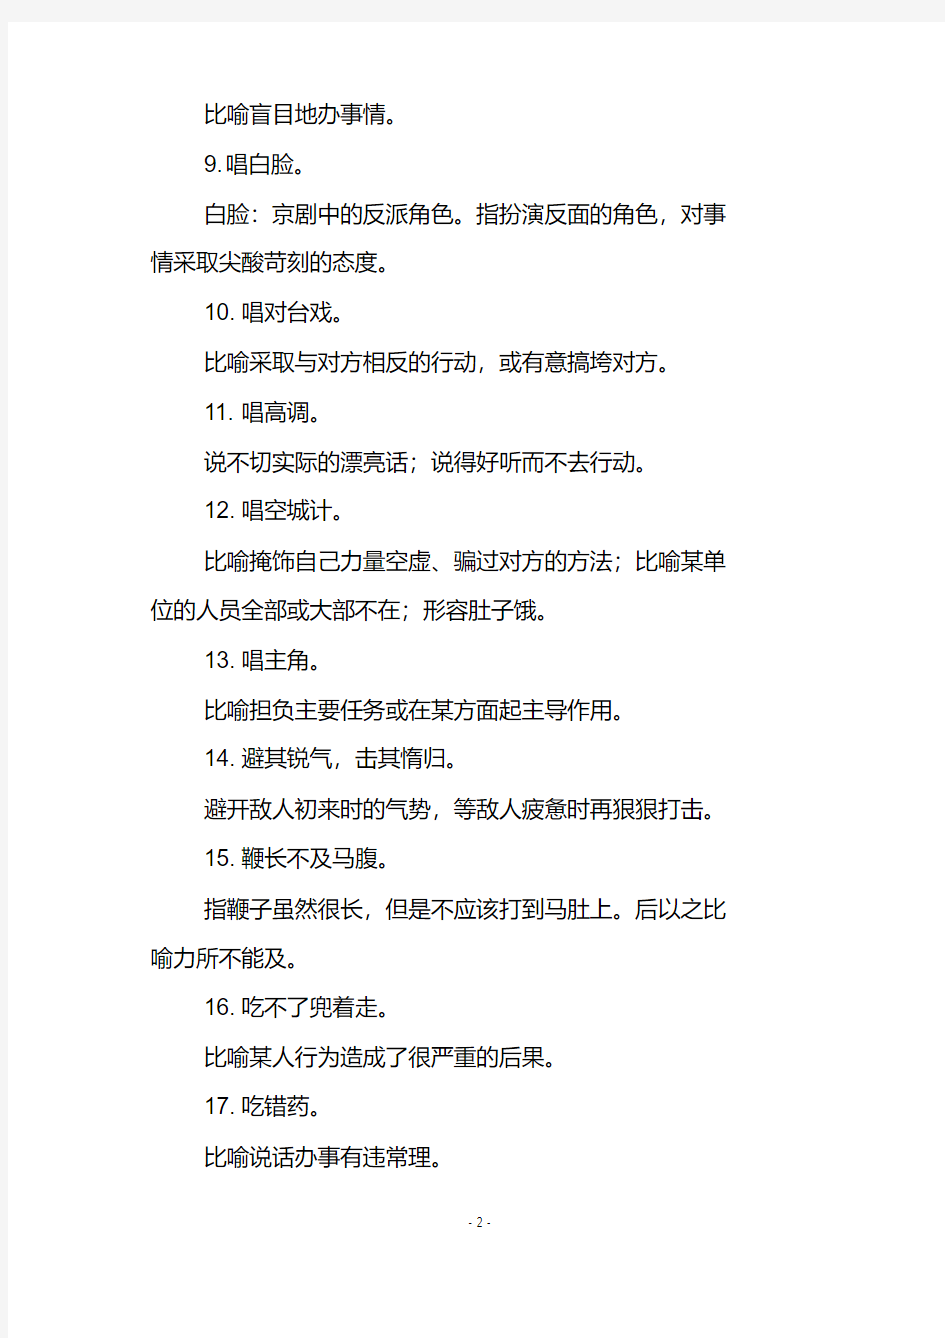 初中语文100个常用俗语总结,作文素材积累